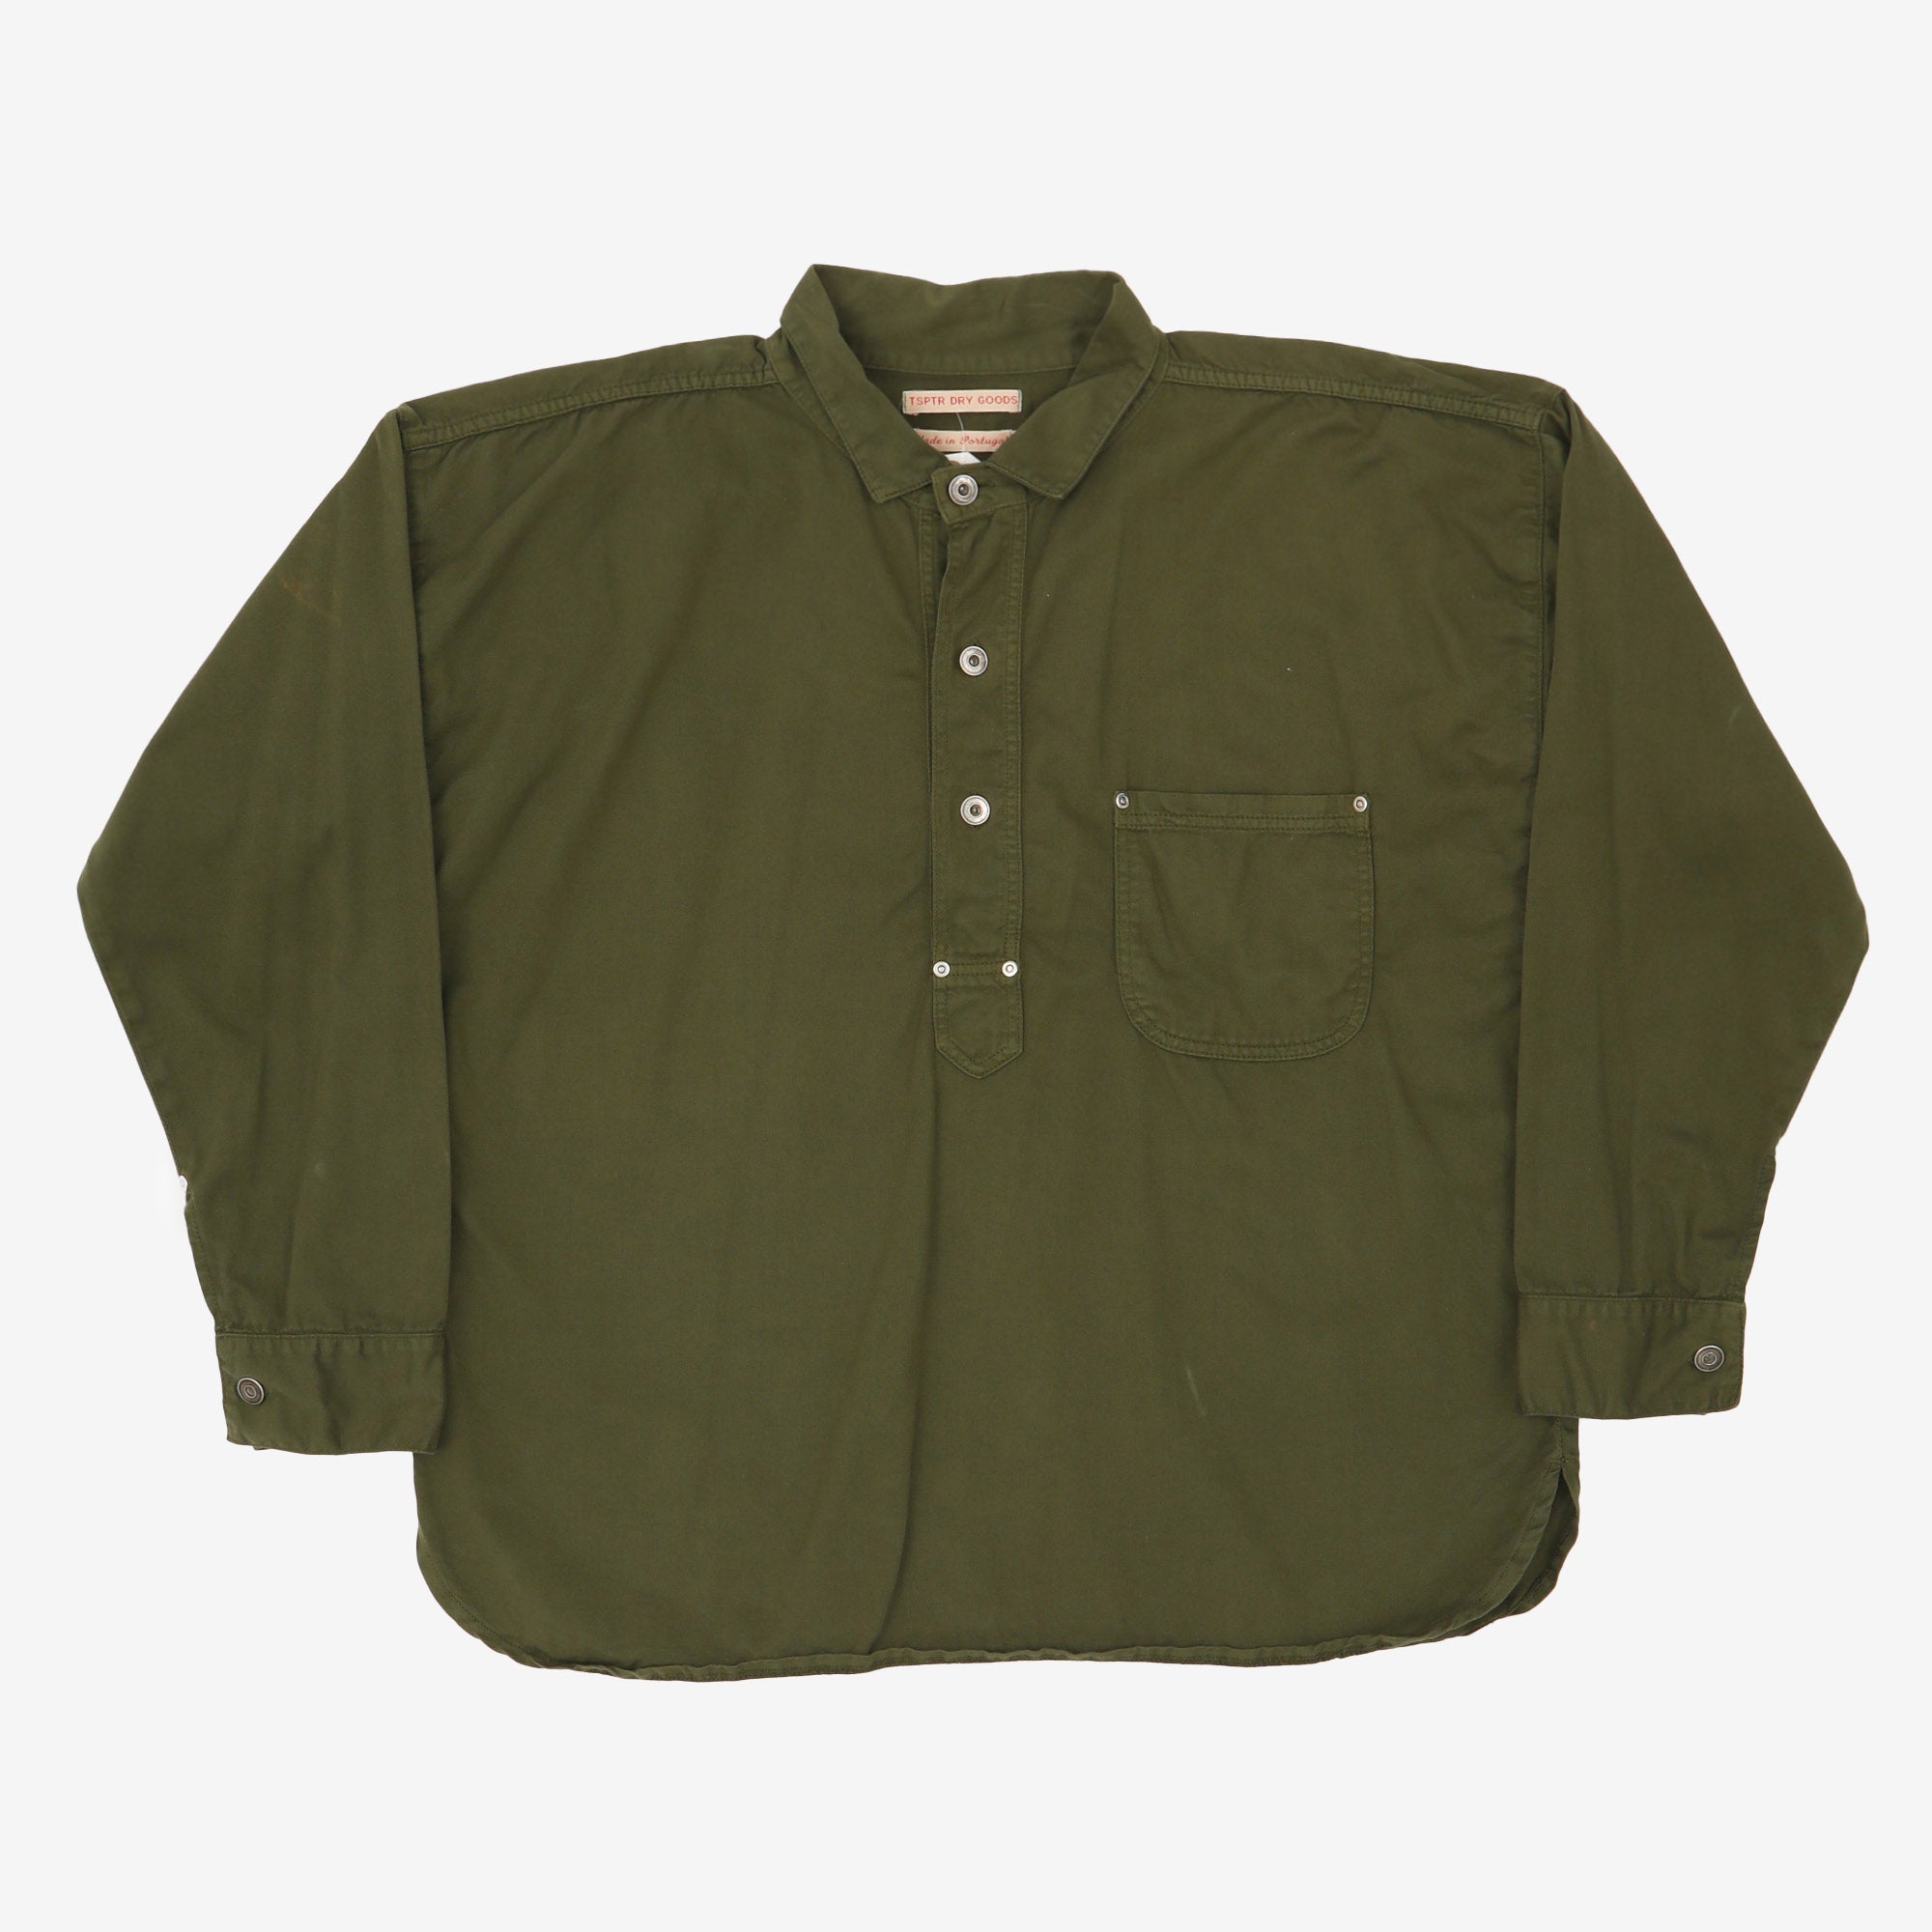 Green 1/4 Shirt